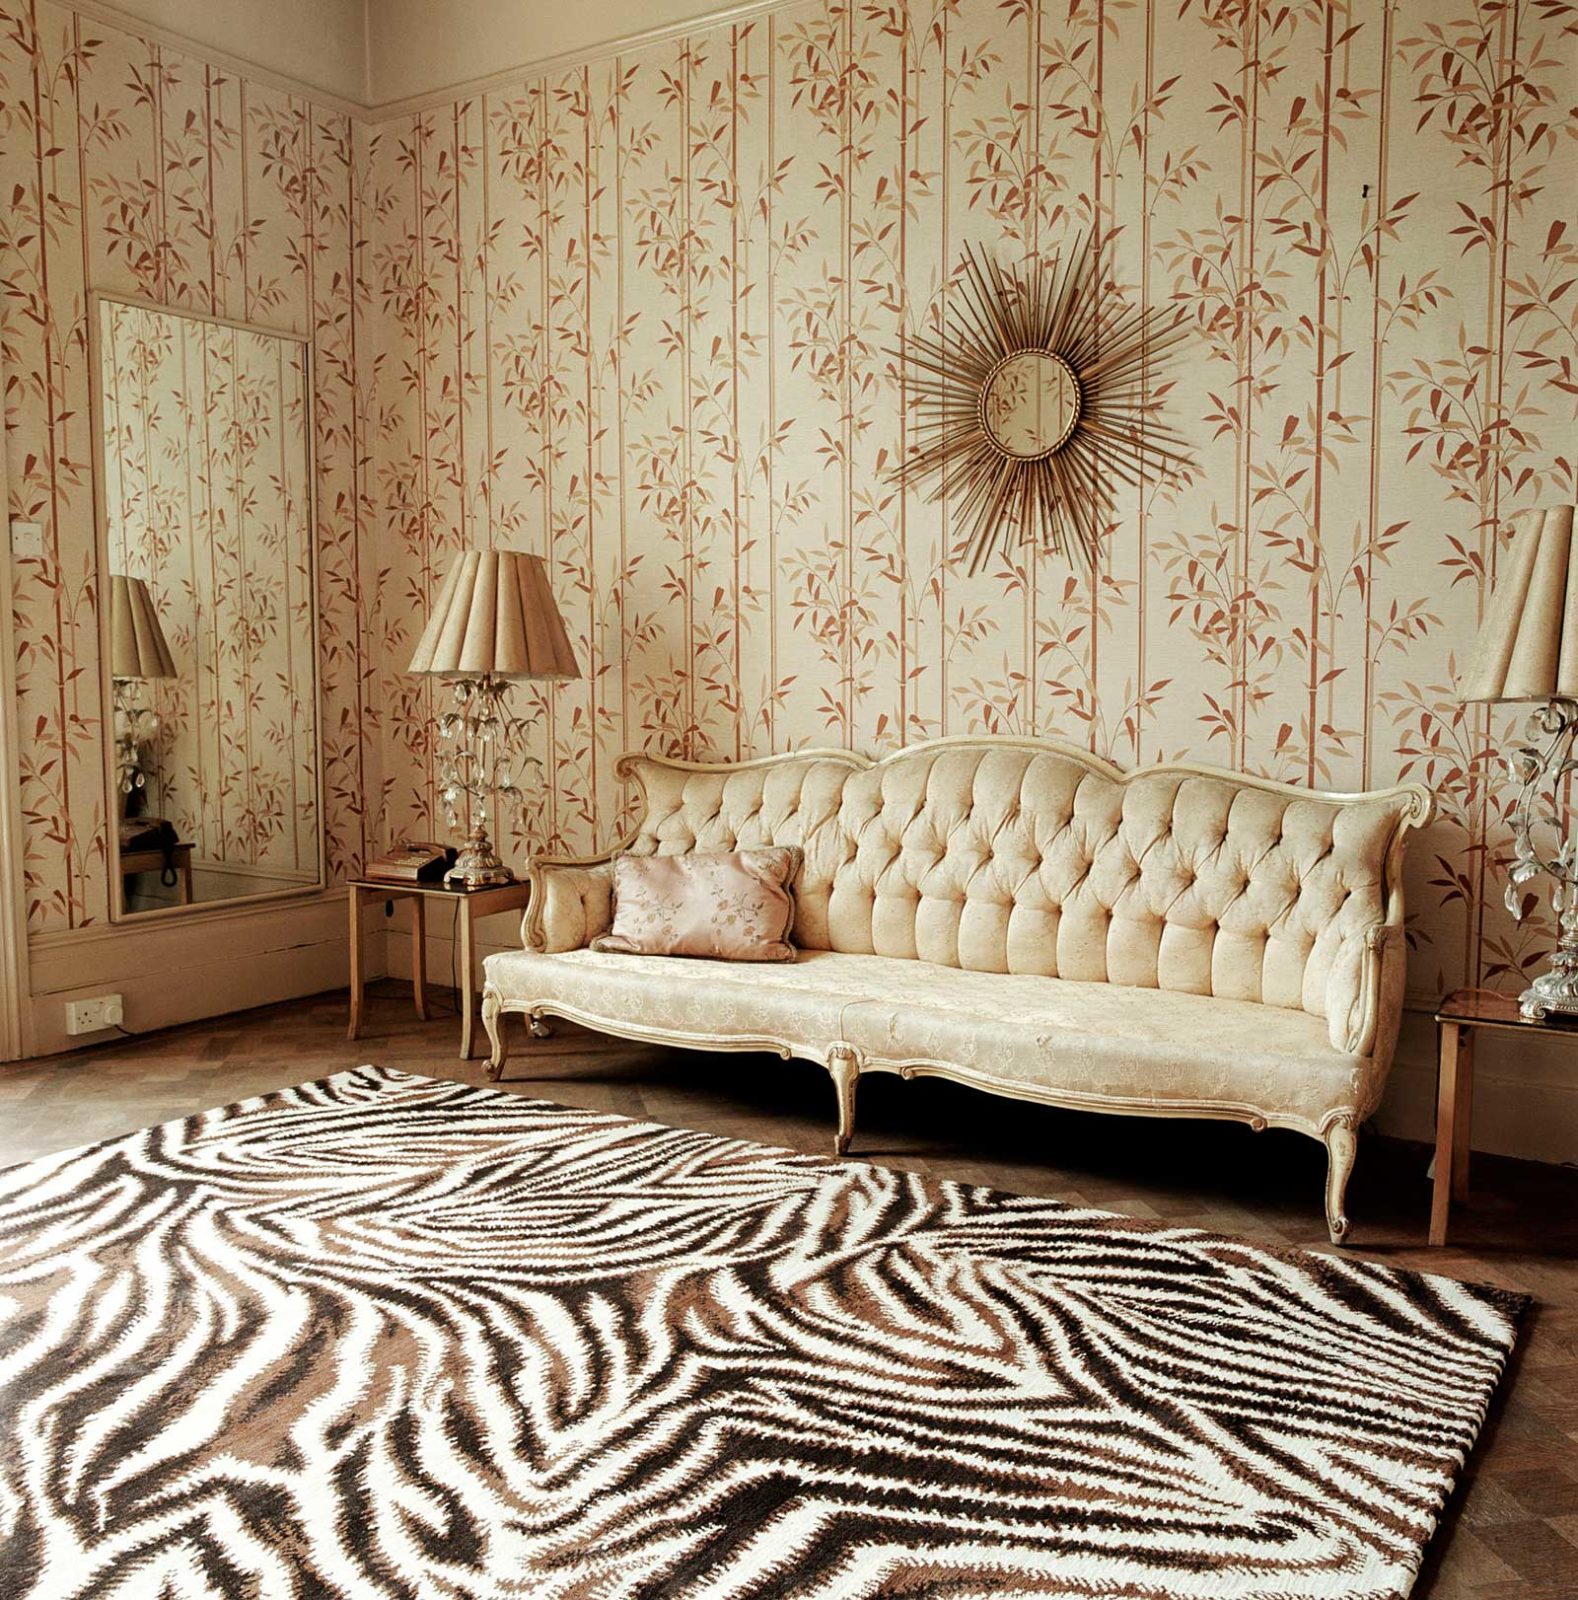 интерьер гостиной с бордовым ковром на полу